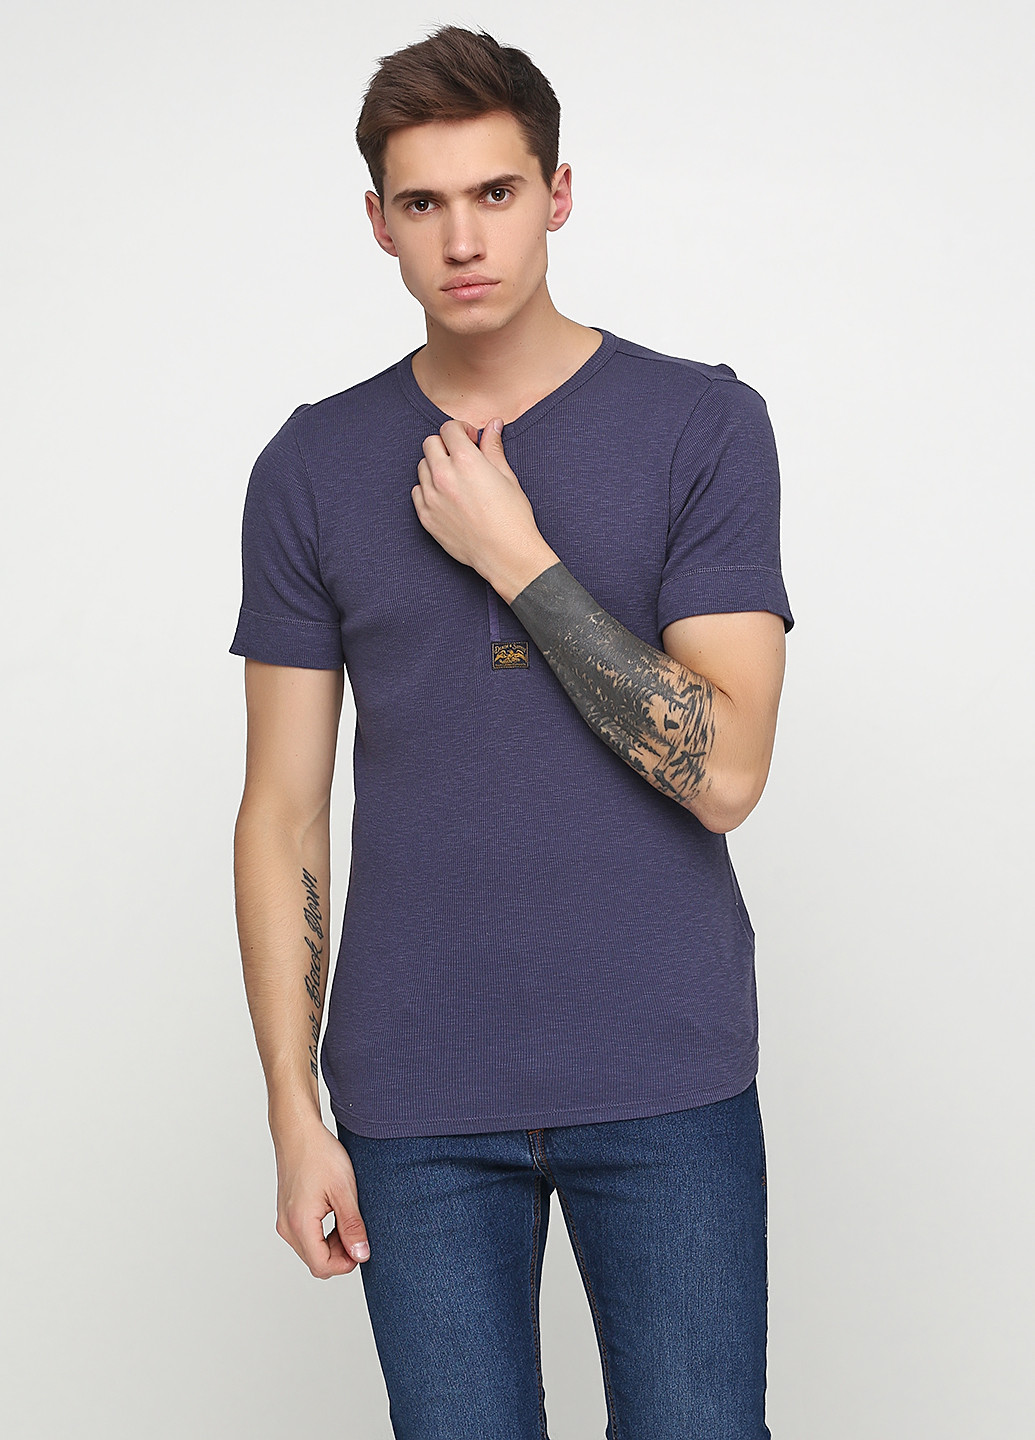 Фиолетовая футболка Ralph Lauren